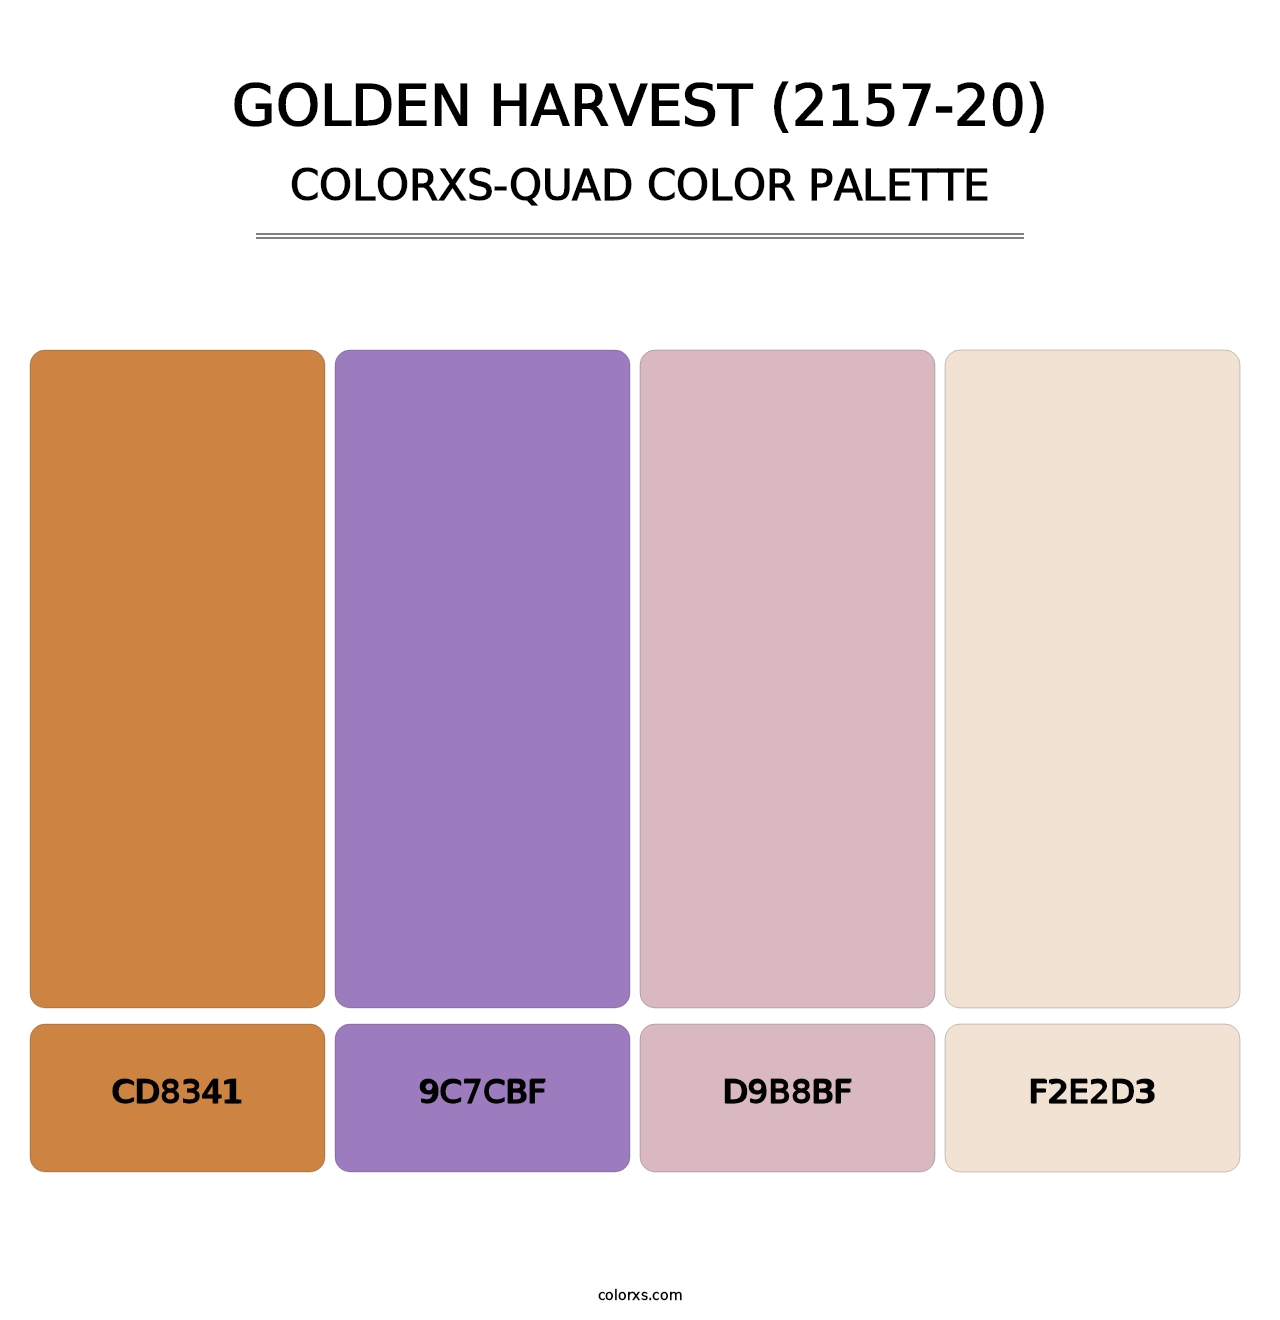 Golden Harvest (2157-20) - Colorxs Quad Palette